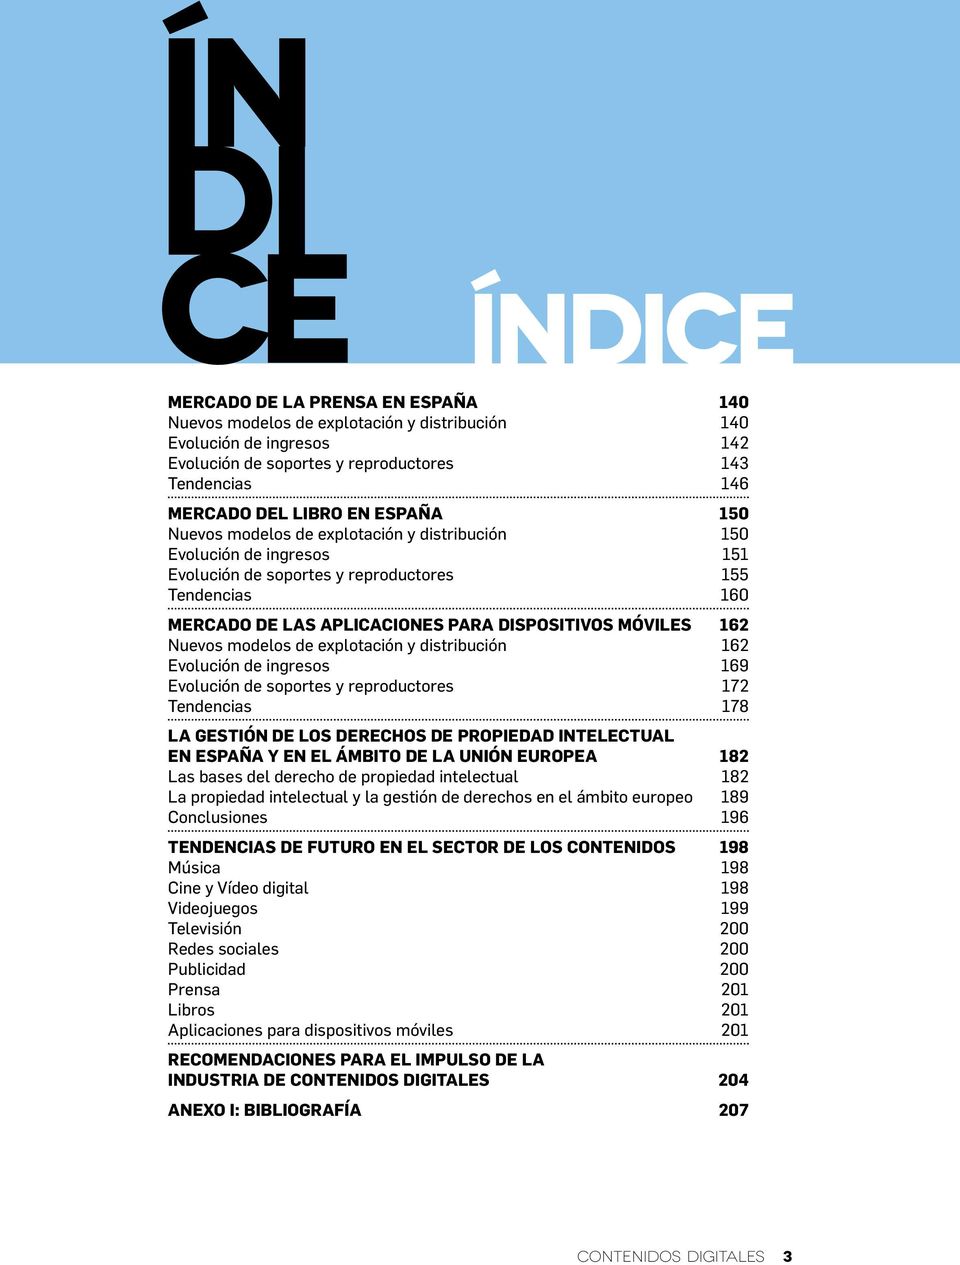 modelos de explotación y distribución 162 Evolución de ingresos 169 Evolución de soportes y reproductores 172 Tendencias 178 La gestión de los derechos de propiedad intelectual en España y en el